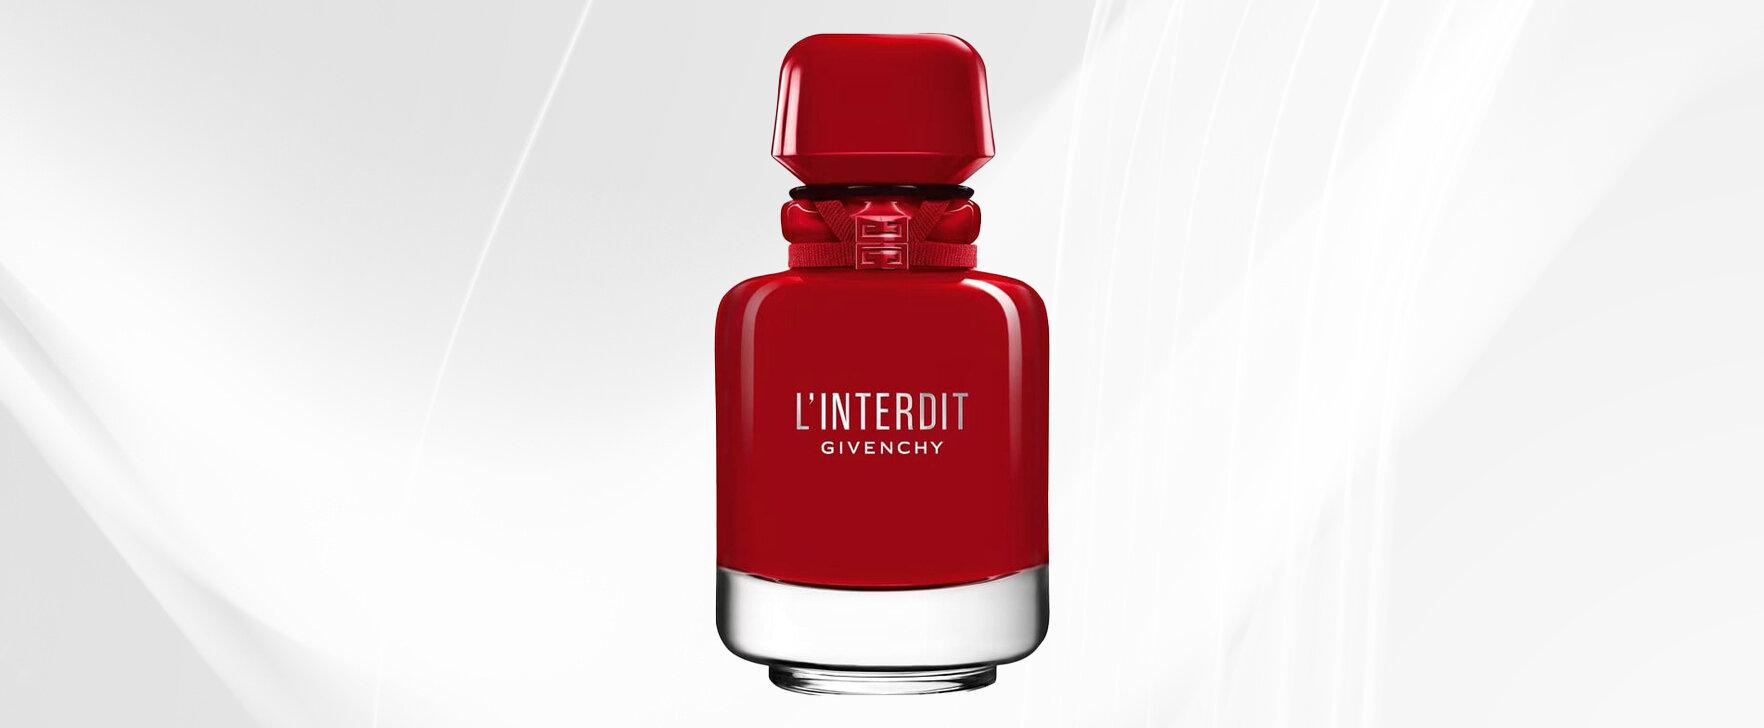 Dark Romanticism: The Limited New Women's Fragrance "L'Interdit (Eau de Parfum Rouge Ultime)" by Givenchy